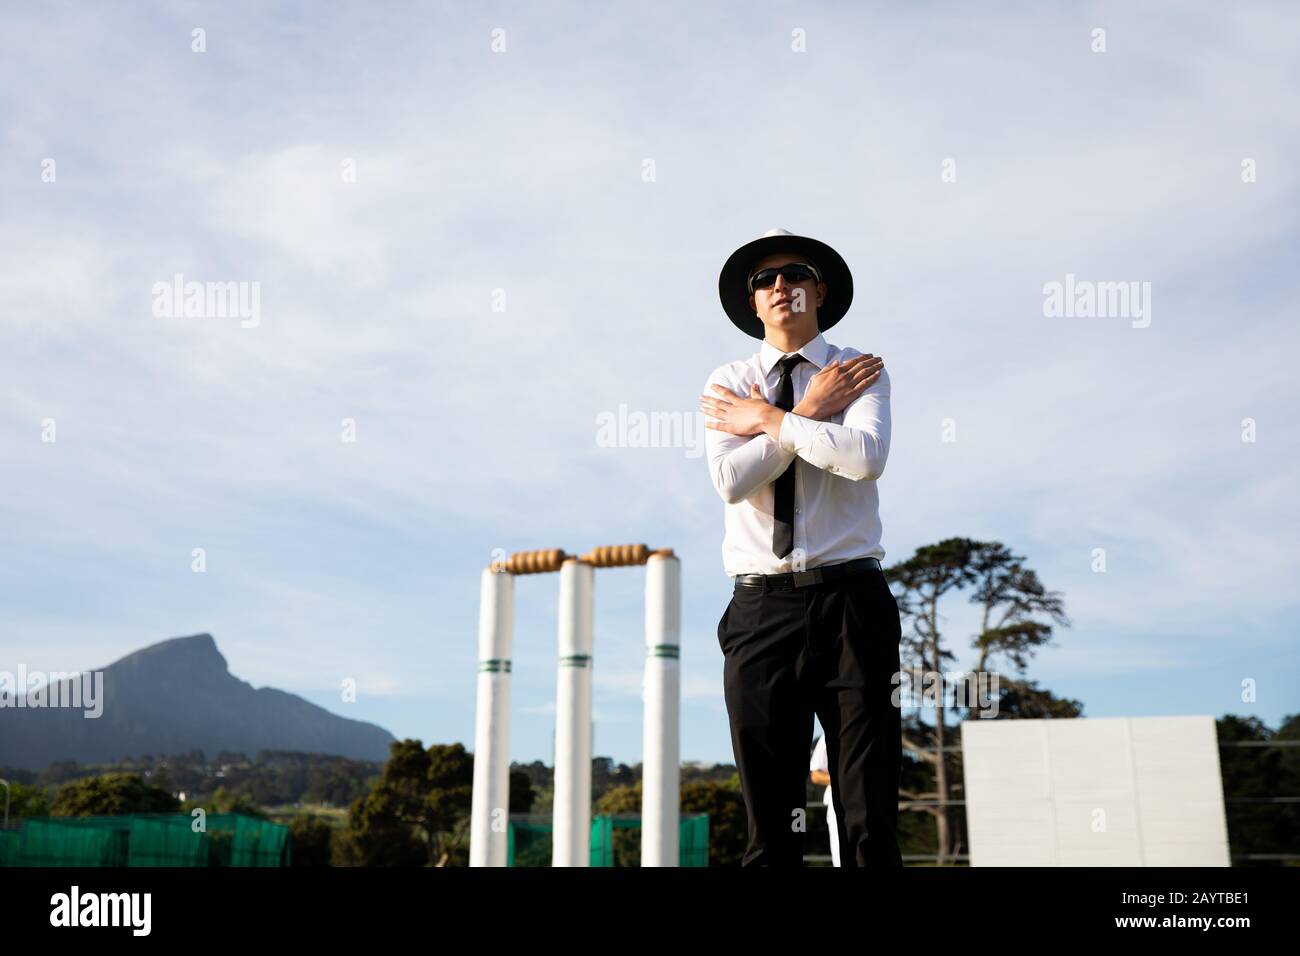 Cricket-Schiedsrichter, der auf einem Cricket-Platz steht Stockfoto